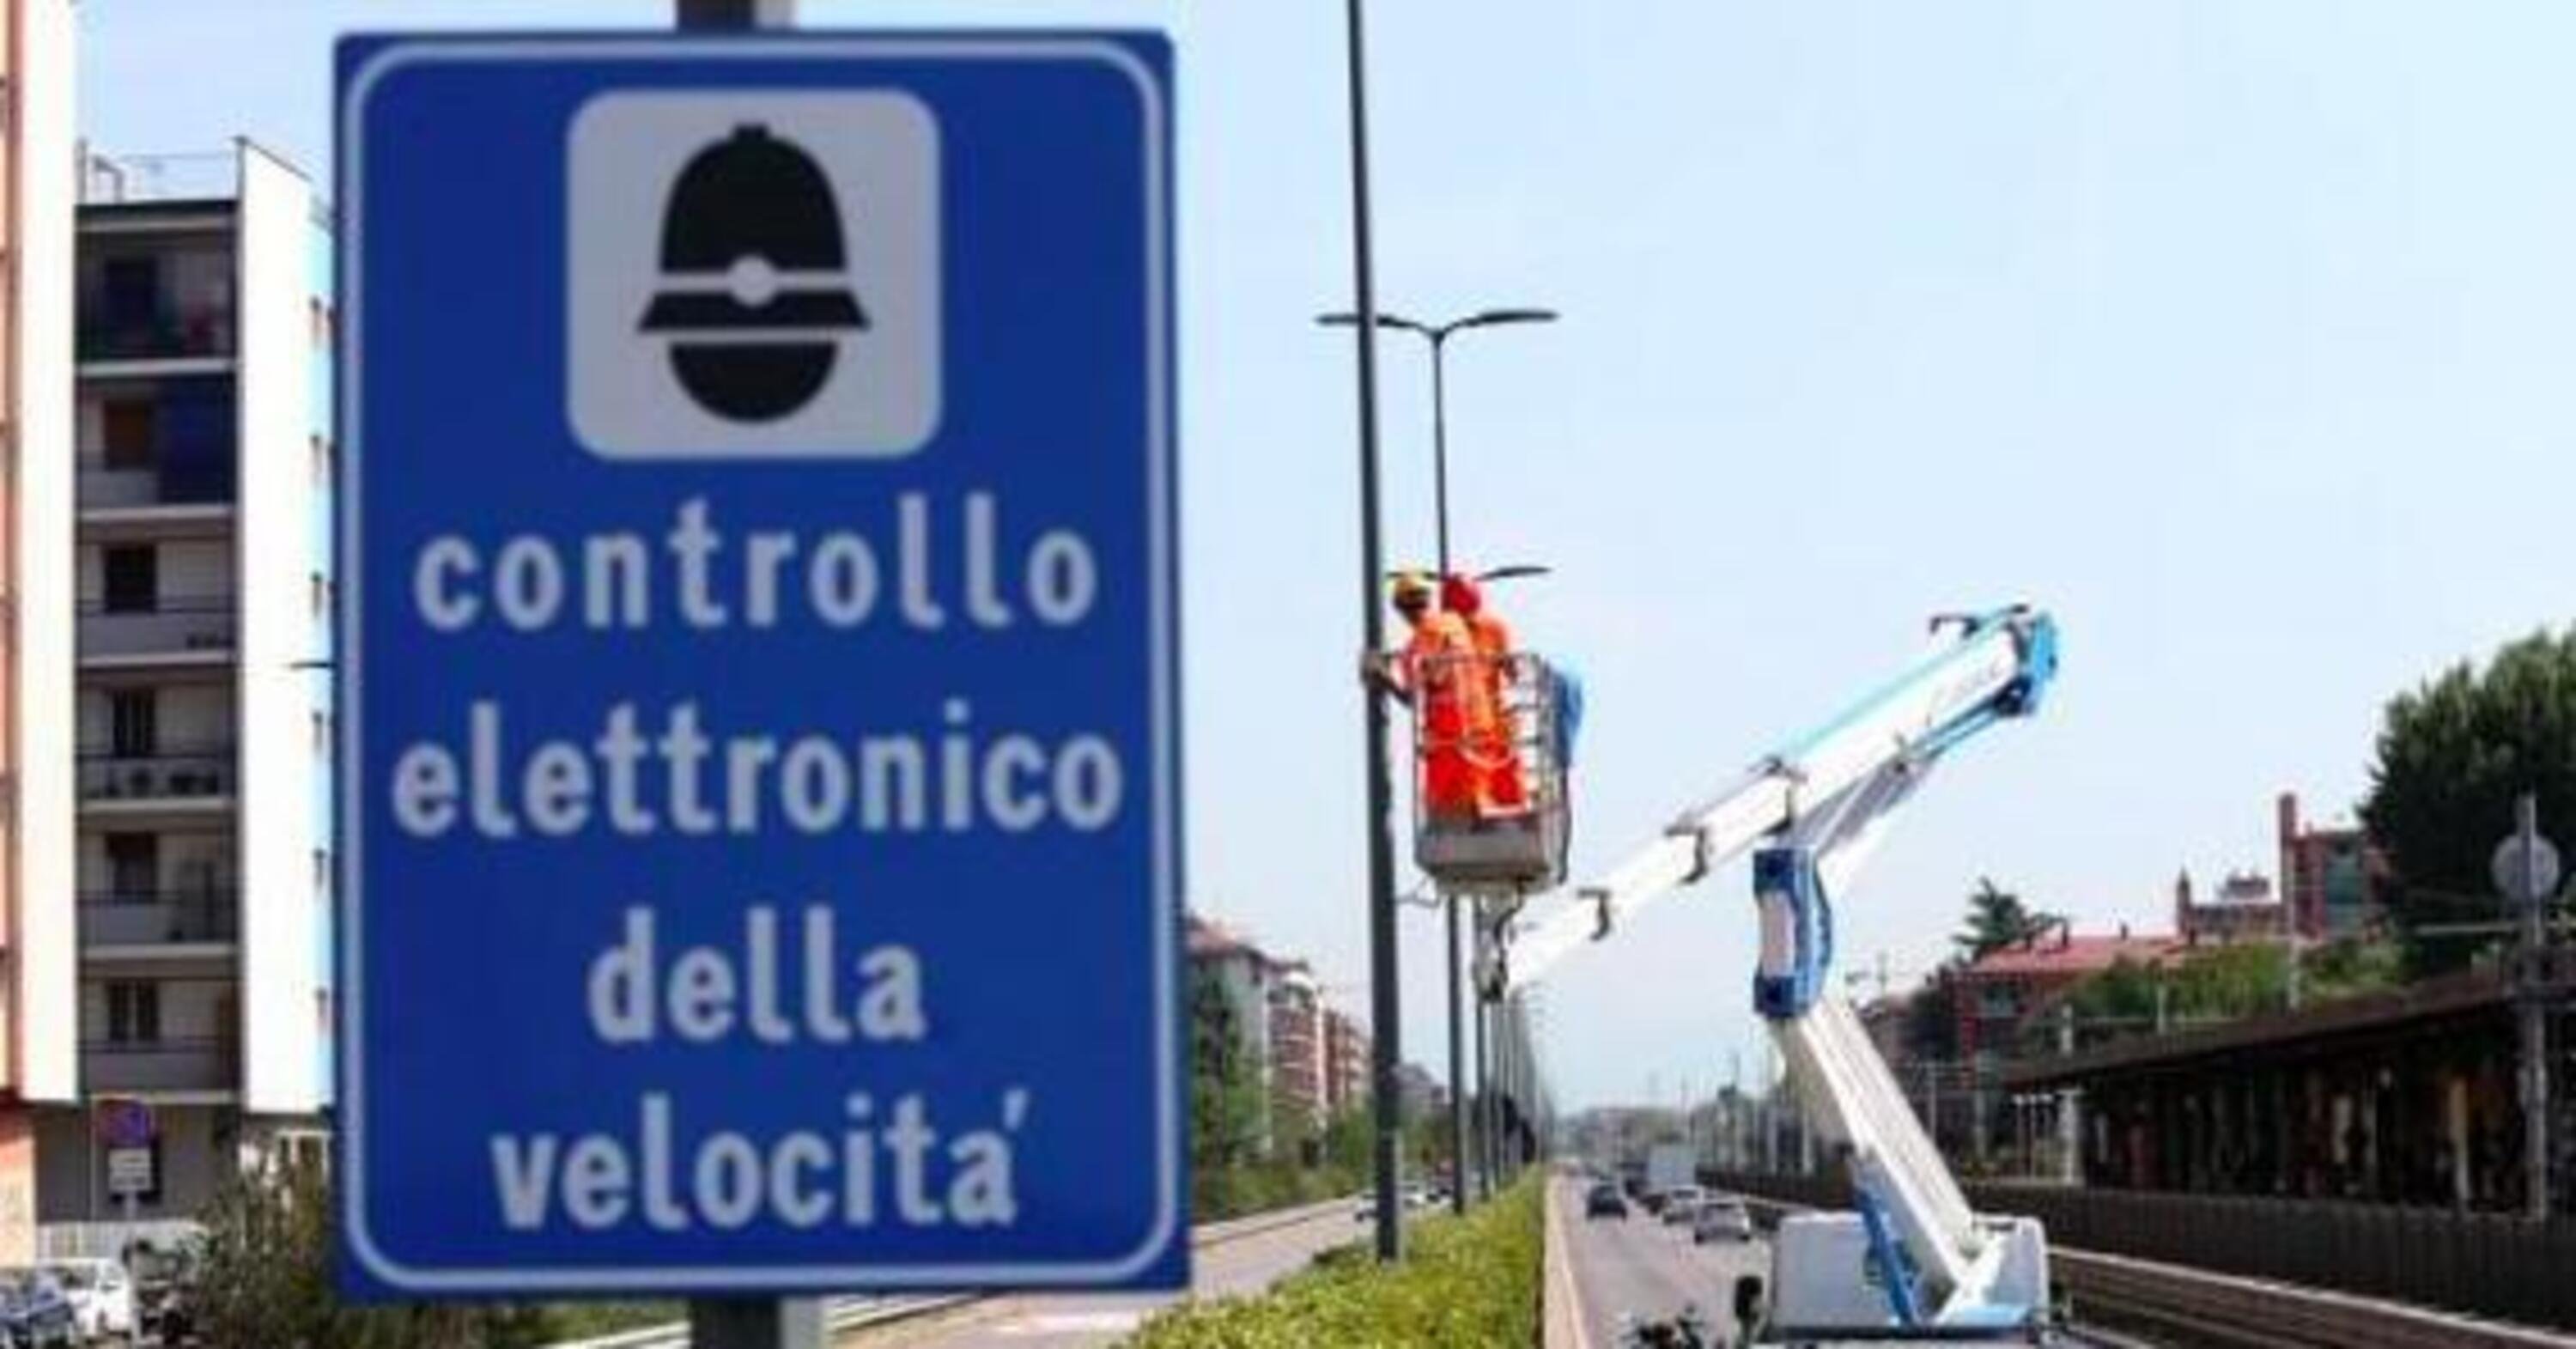 A Milano arrivano 11 nuovi autovelox: ecco dove saranno installati e da quando diventeranno operativi 